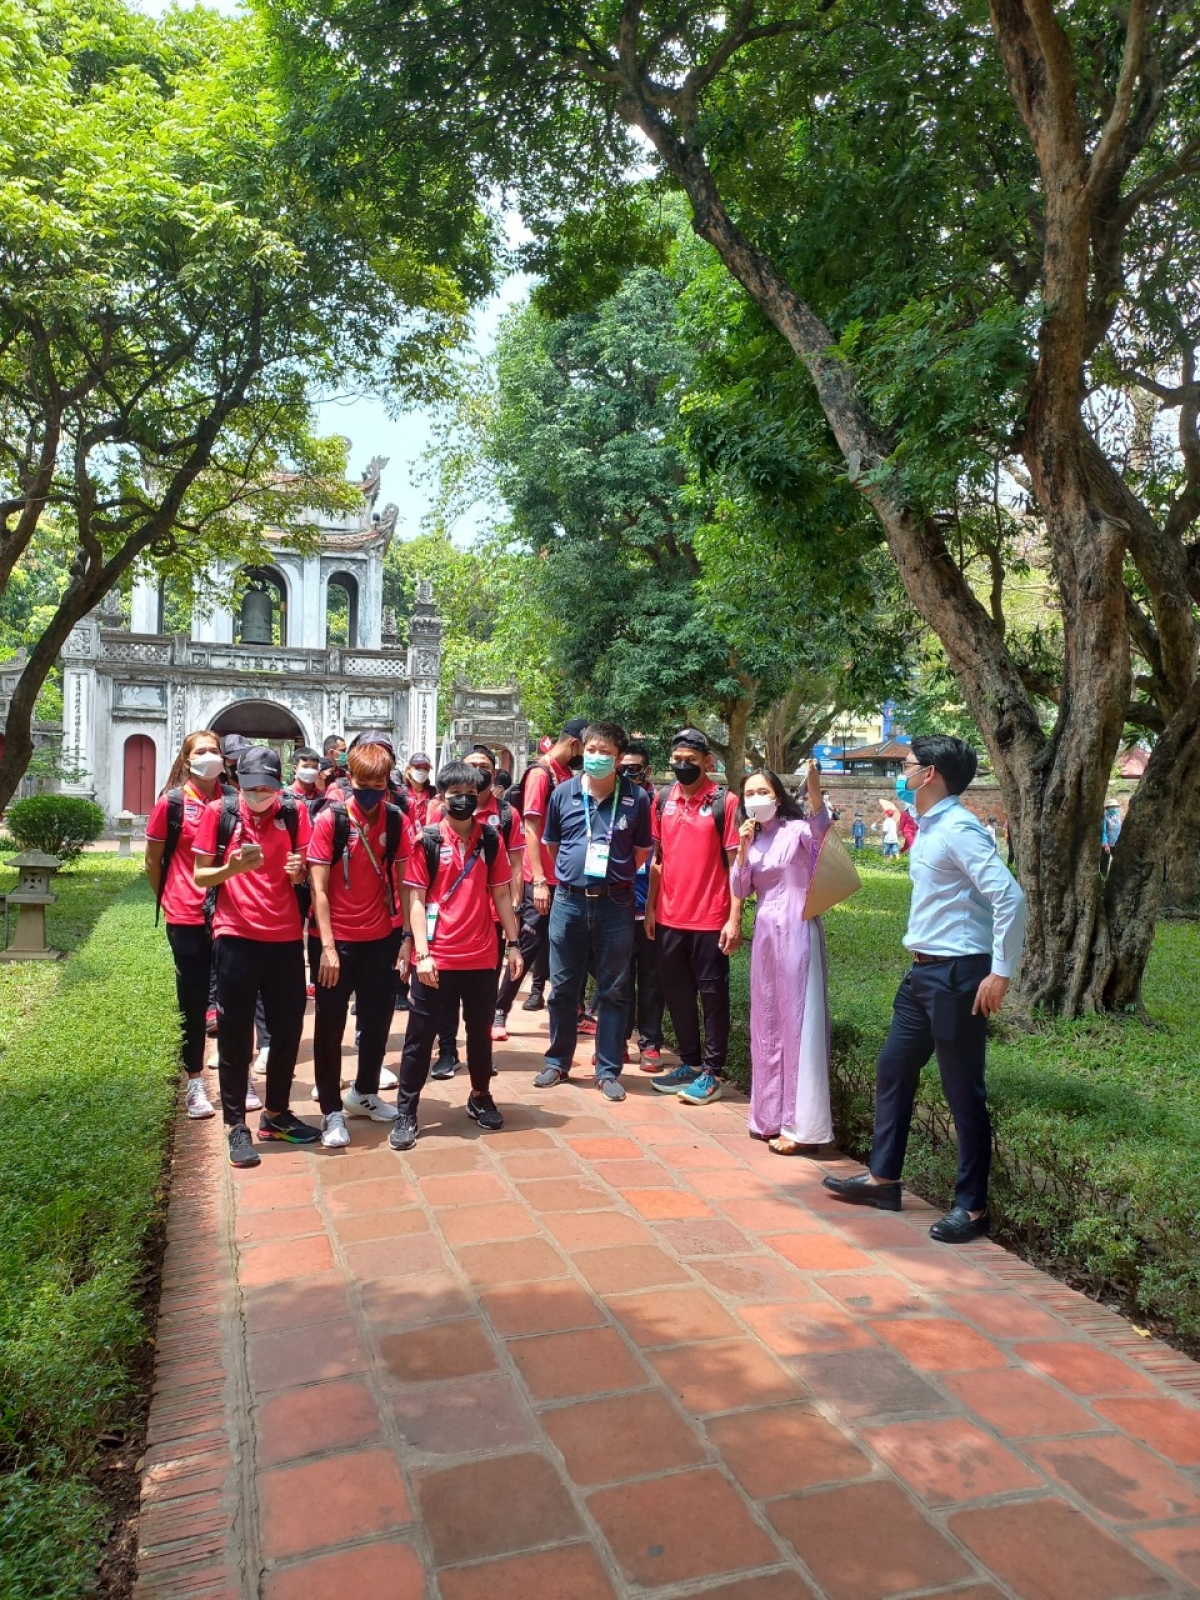 Trong hành trình trải nghiệm “Hanoi City Tour”, đoàn vận động viên cầu mây Thái Lan có khoảng 30 phút để khám phá, tìm hiểu Di tích quốc gia đặc biệt Văn Miếu - Quốc Tử Giám